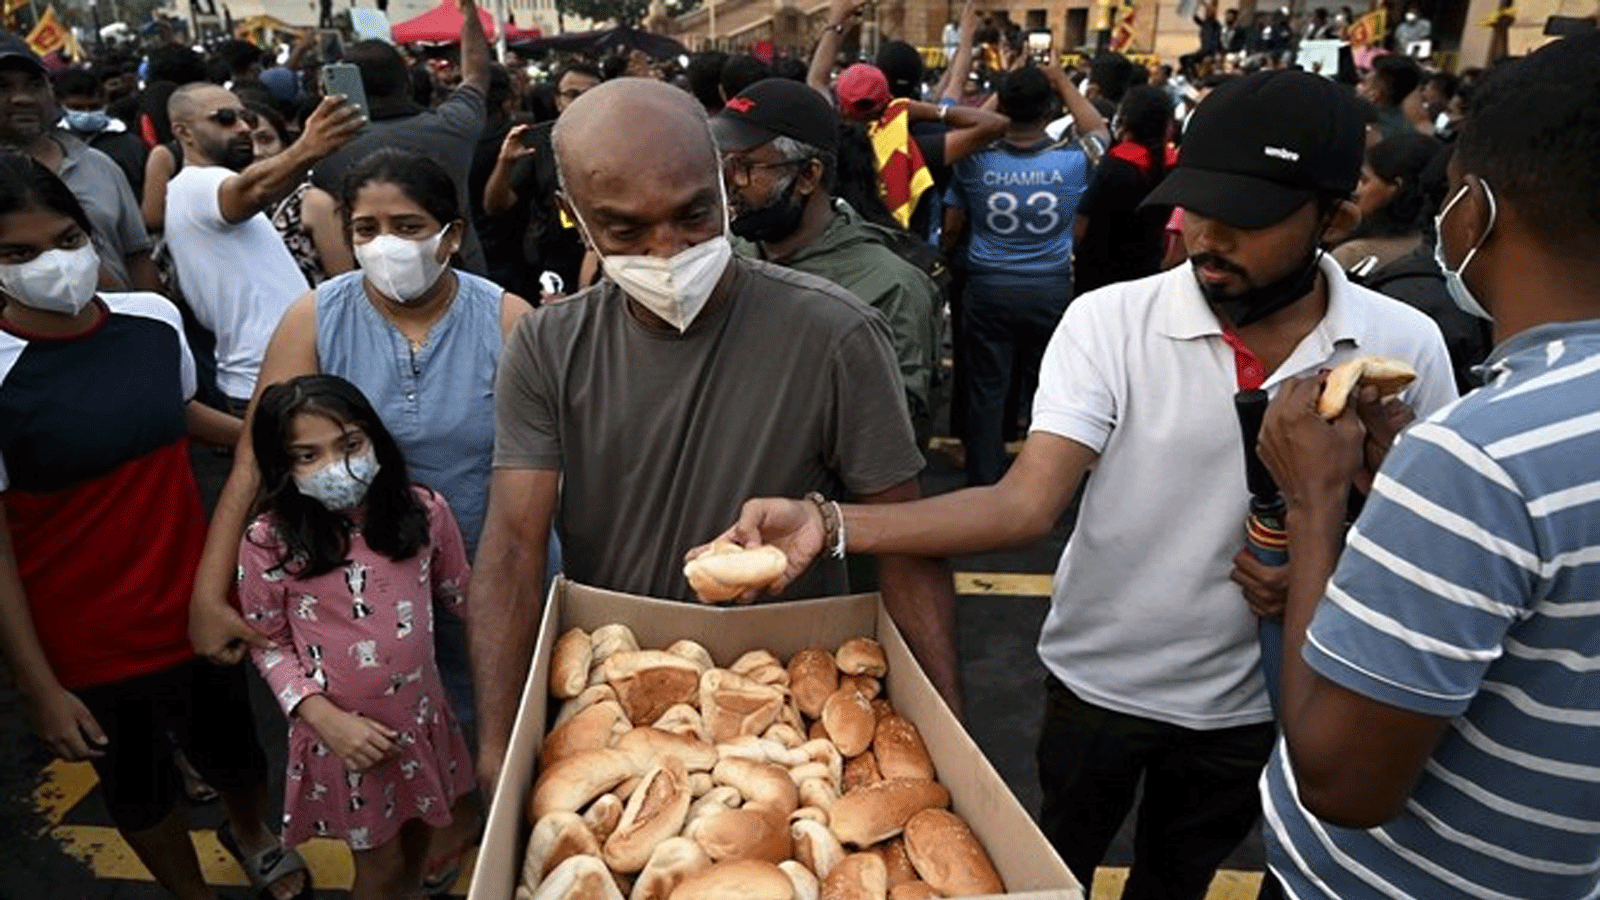 رجلُ يقدم طعامًا مجانيًا للمتظاهرين أثناء مشاركتهم في احتجاج على الأزمة الاقتصادية عند مدخل مكتب الرئيس في كولومبو.